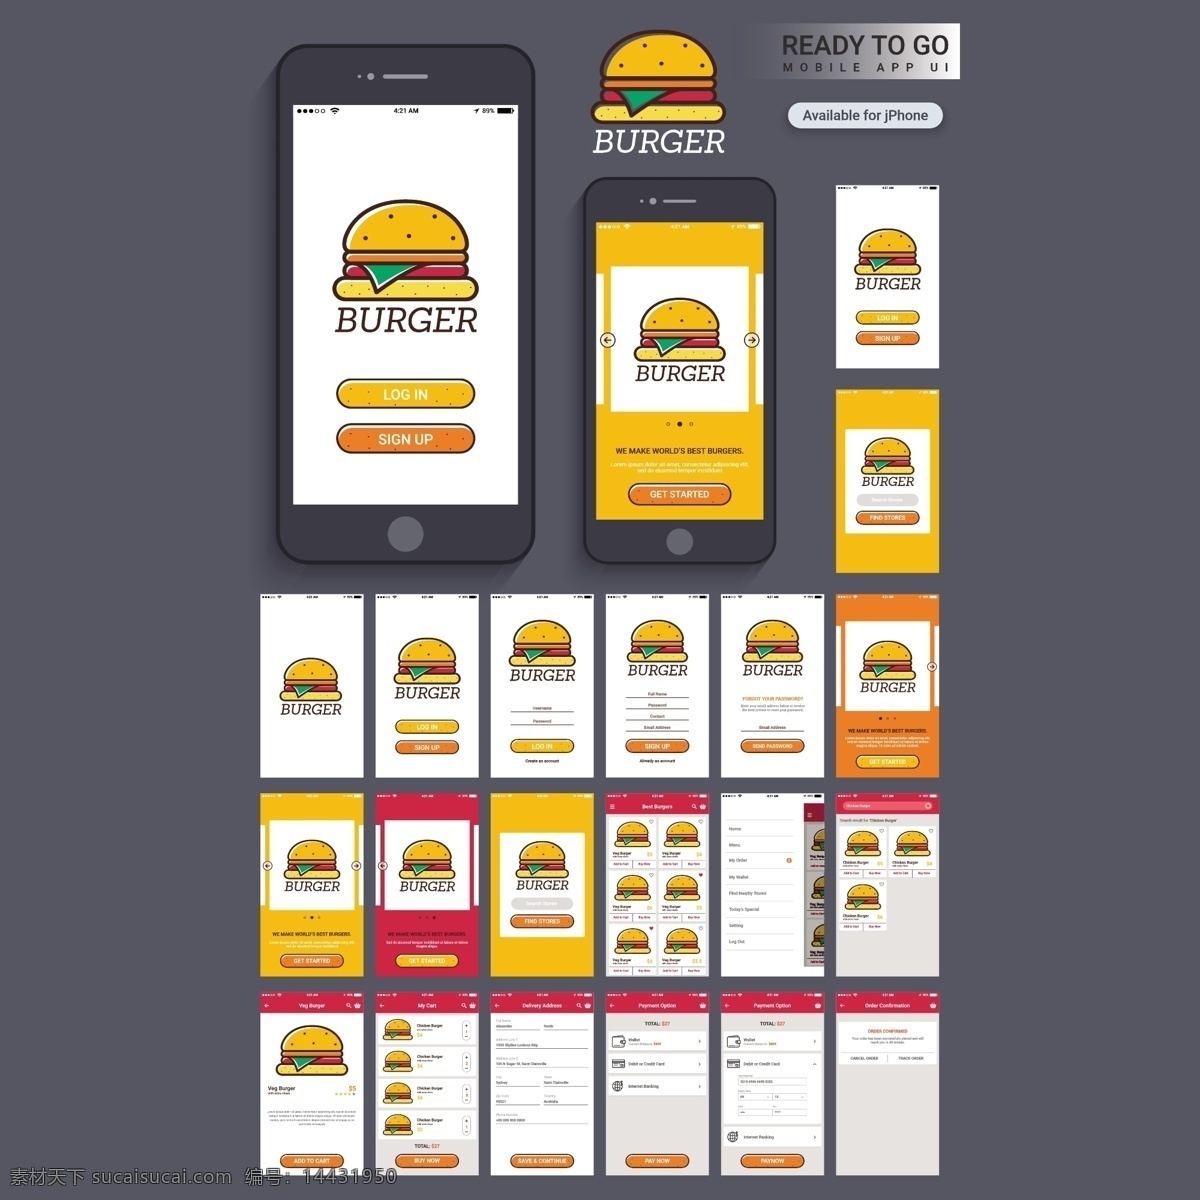 汉堡 酒吧 移动 应用程序 食品 商业 菜单 技术 图标 电脑 模板 电话 社交媒体 按钮 布局 网页 网站 互联网 社交 签名 平面